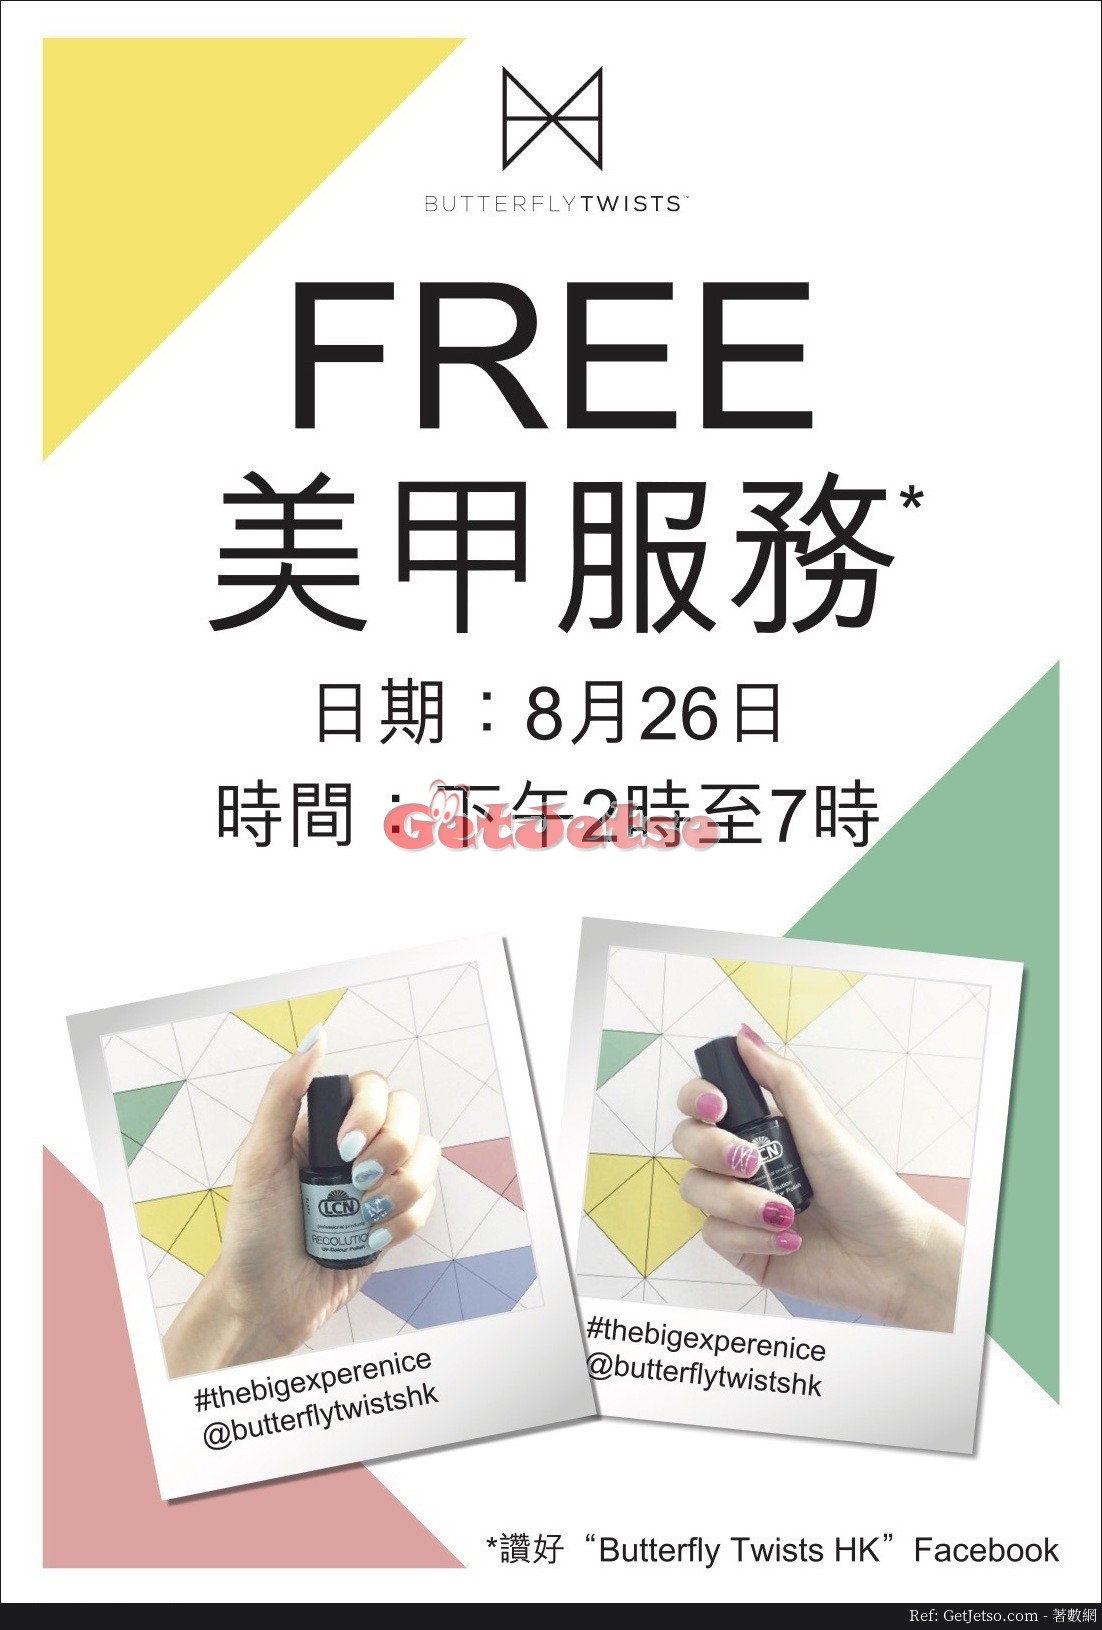 3NITY 免費美甲服務優惠@新都會廣場(17年8月26日)圖片1